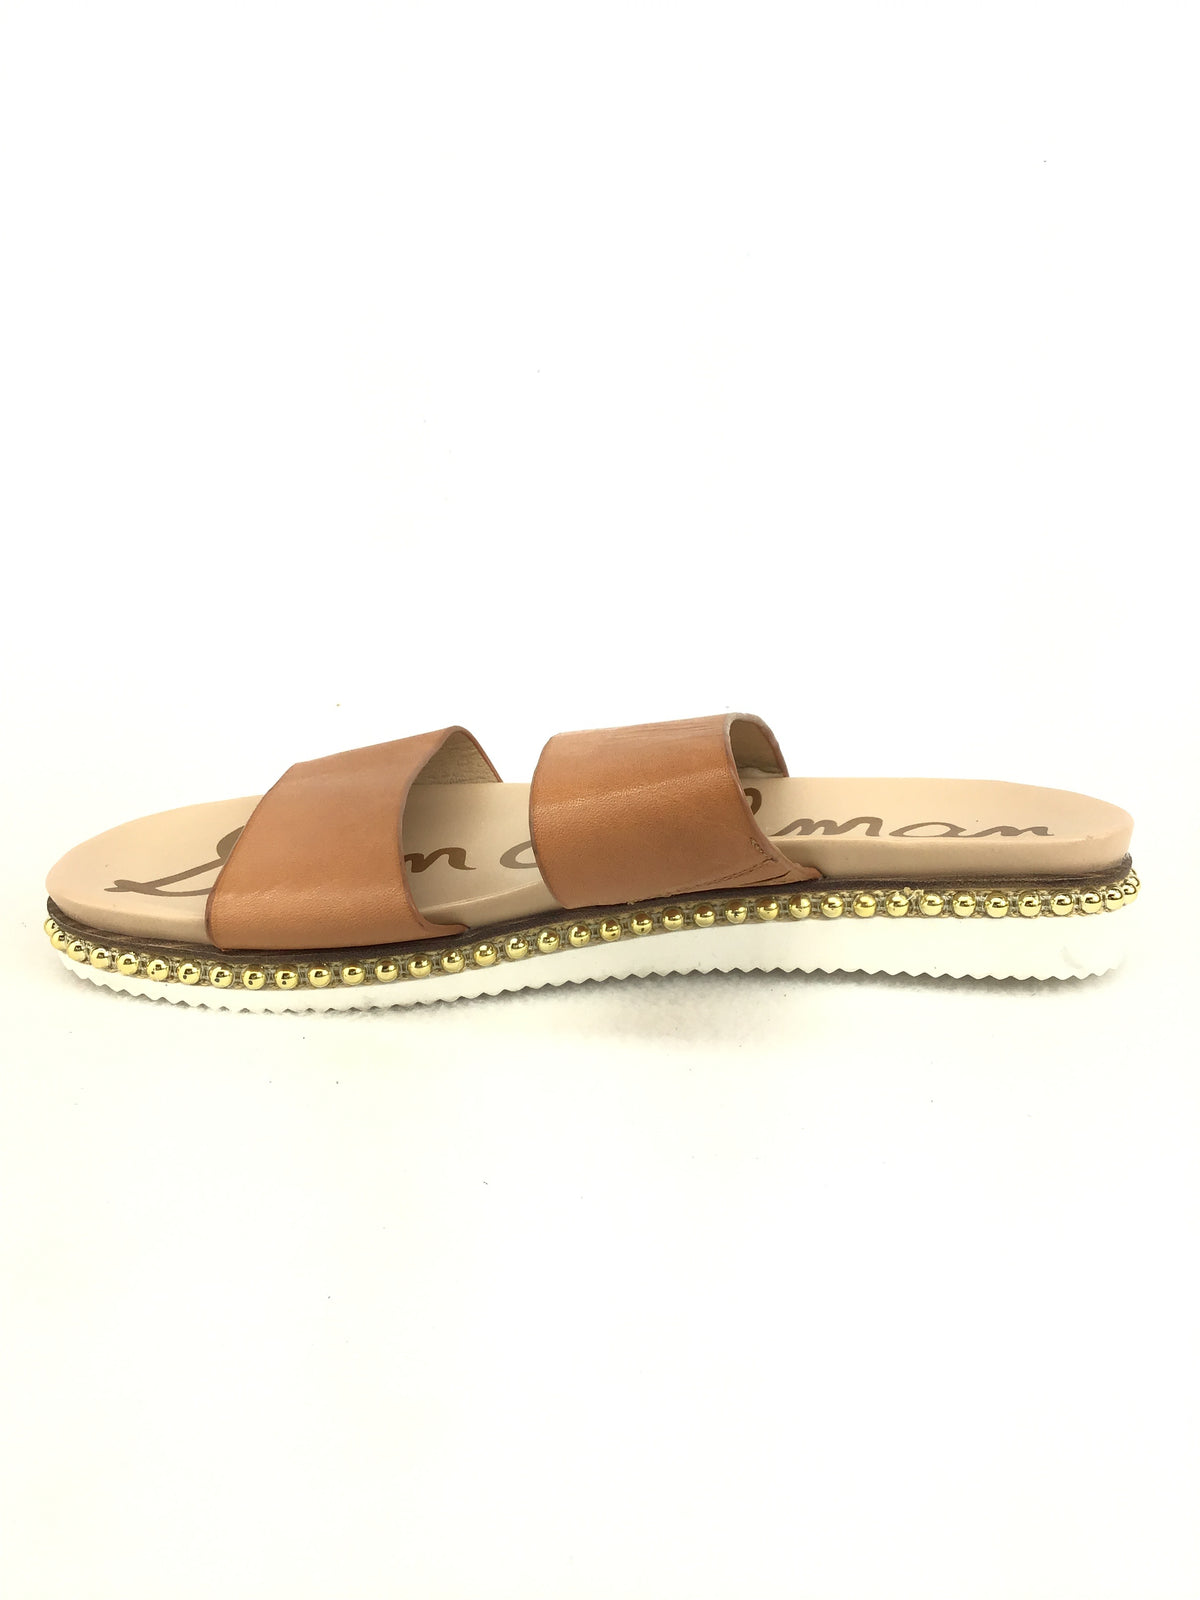 Sam Edelman Asha Slide Sandals Size 8.5M